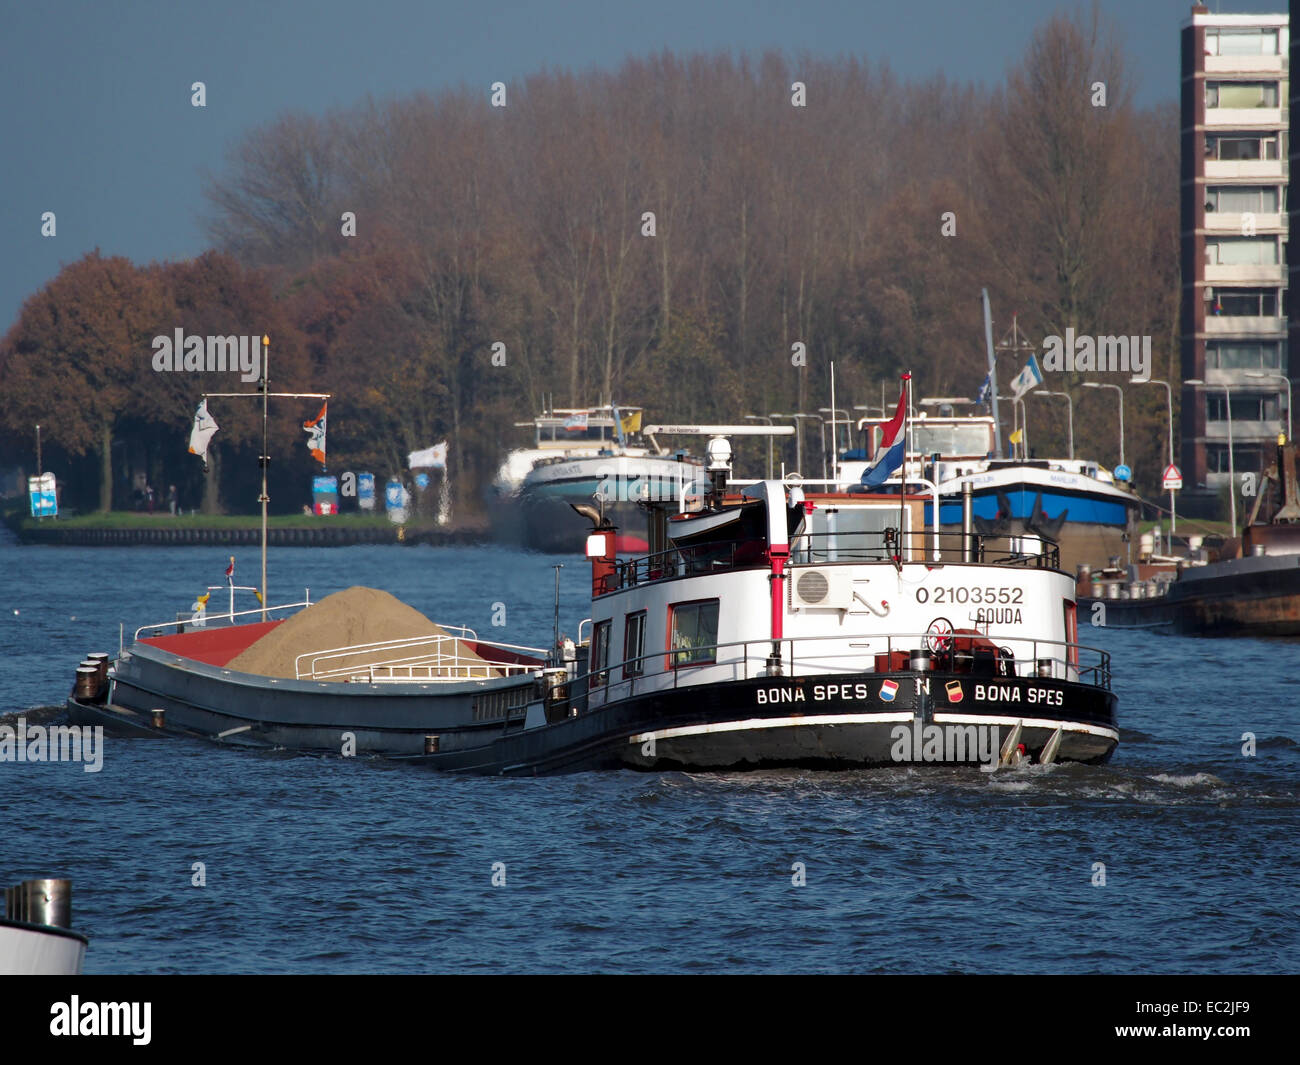 Bona Spes, ENI 02103552 op het Amsterdam-Rijn kanaal, hekfoto Stock Photo